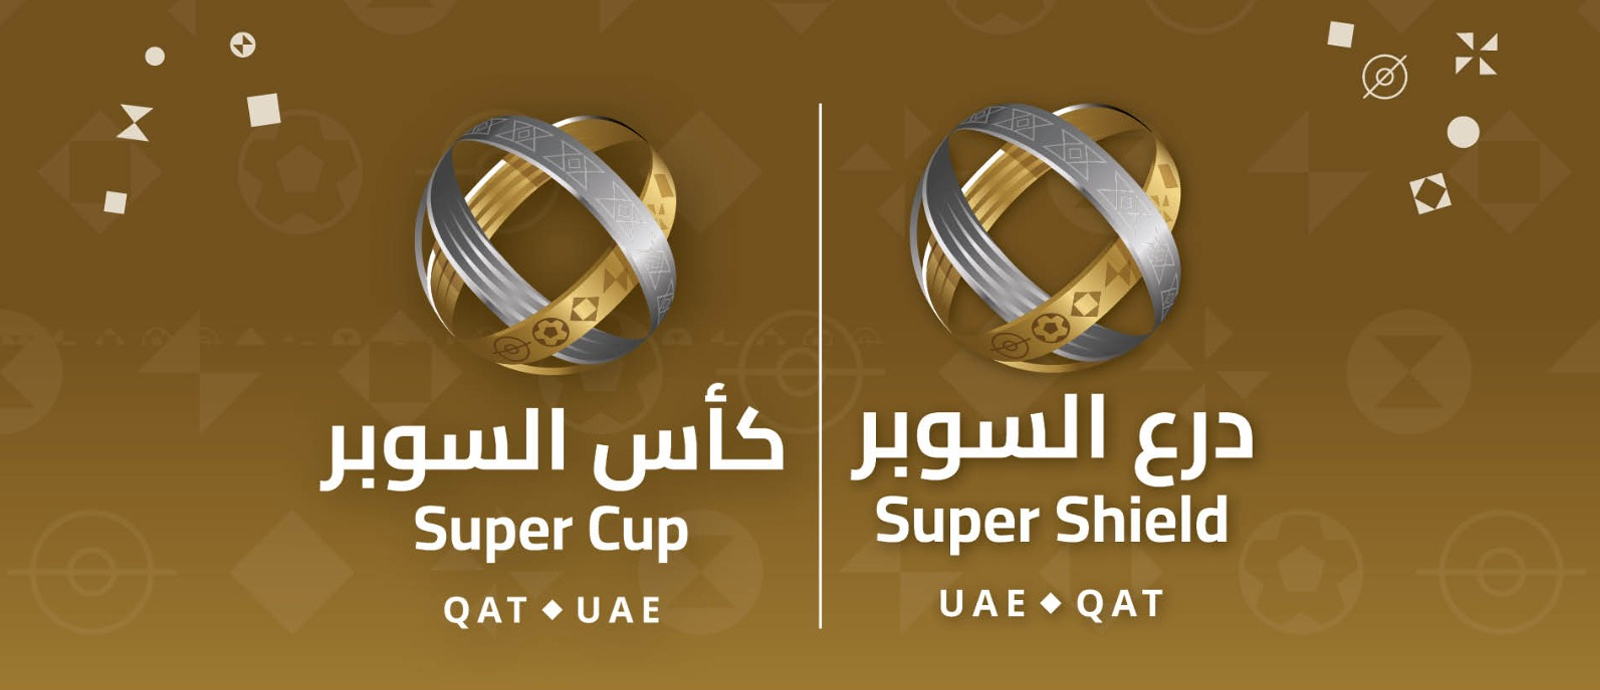 تدشين البطولة المشتركة بدرع وكأس السوبر القطري الإماراتي 